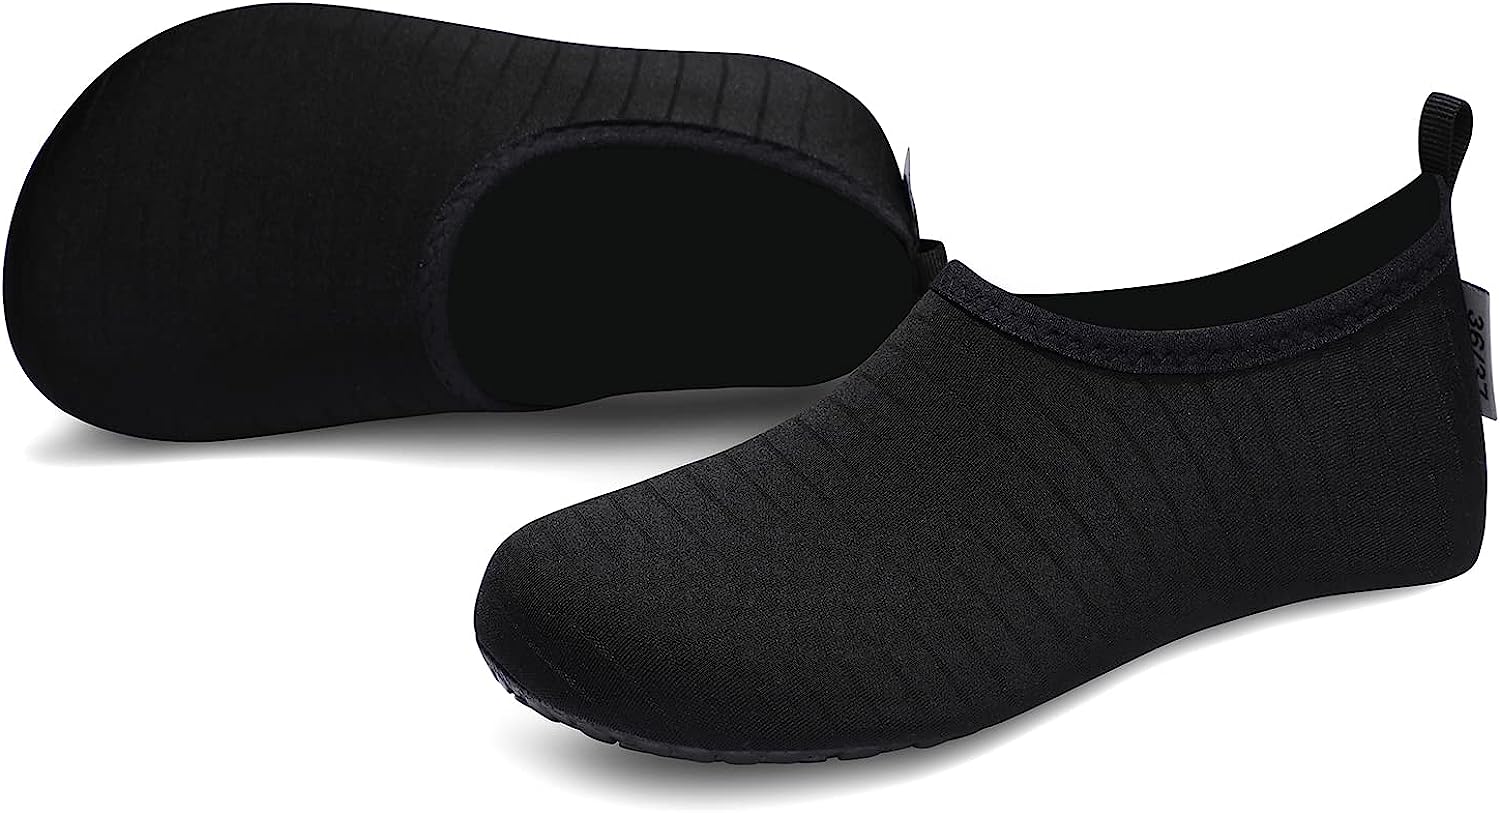 Barefoot Quick-Dry Aqua Yoga Socks Slip-On for Men Women